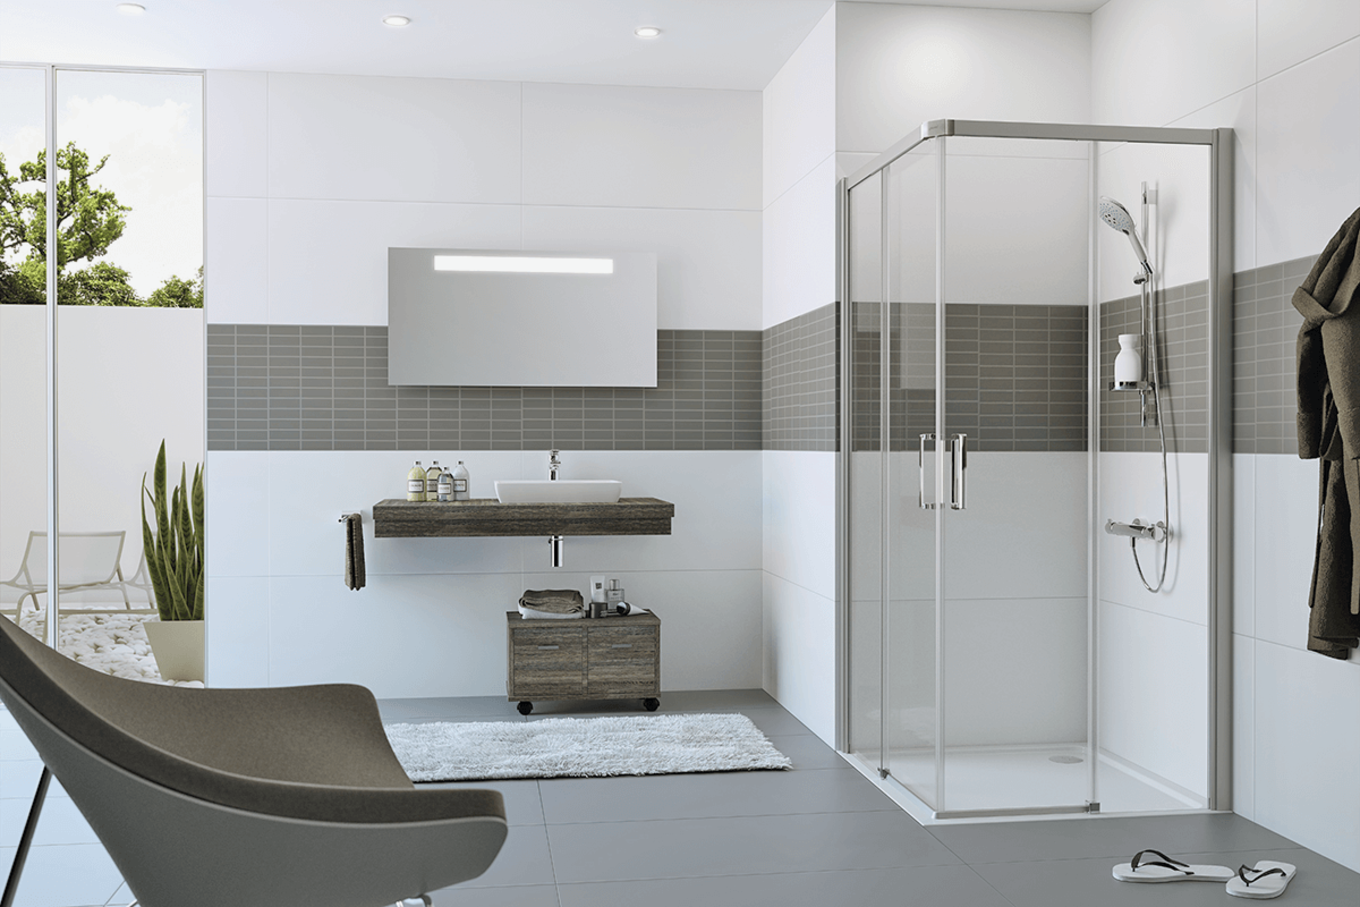 Bauarena Badwelt: Modernes Badezimmer mit Gleittüreckeinstieg